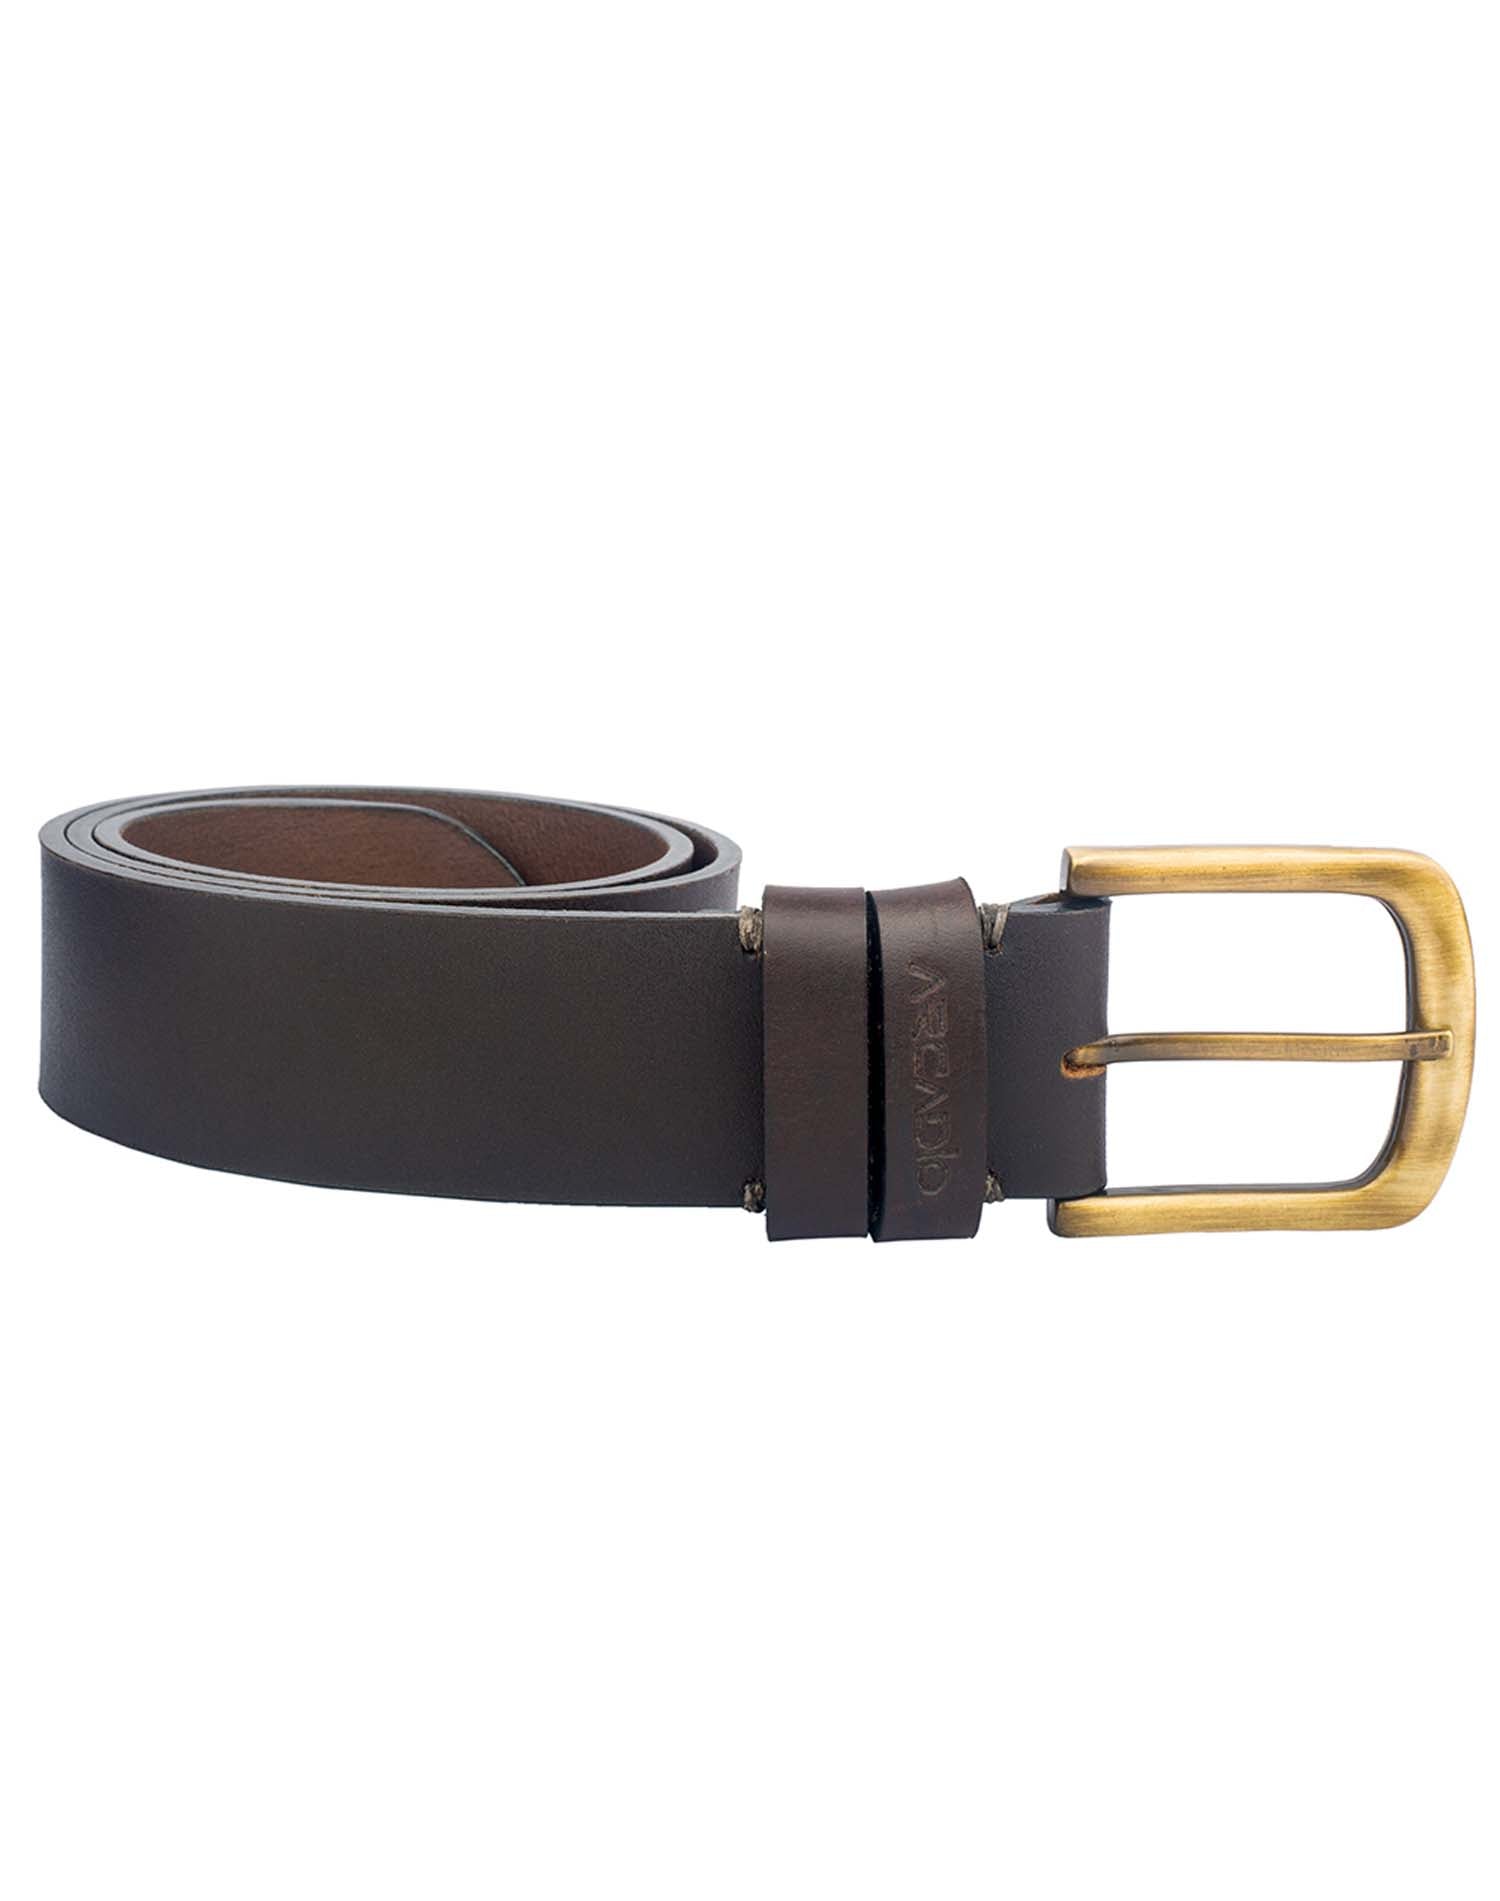 VINTAGE MANIA Leather Belt ARB1016BR ARCADIO